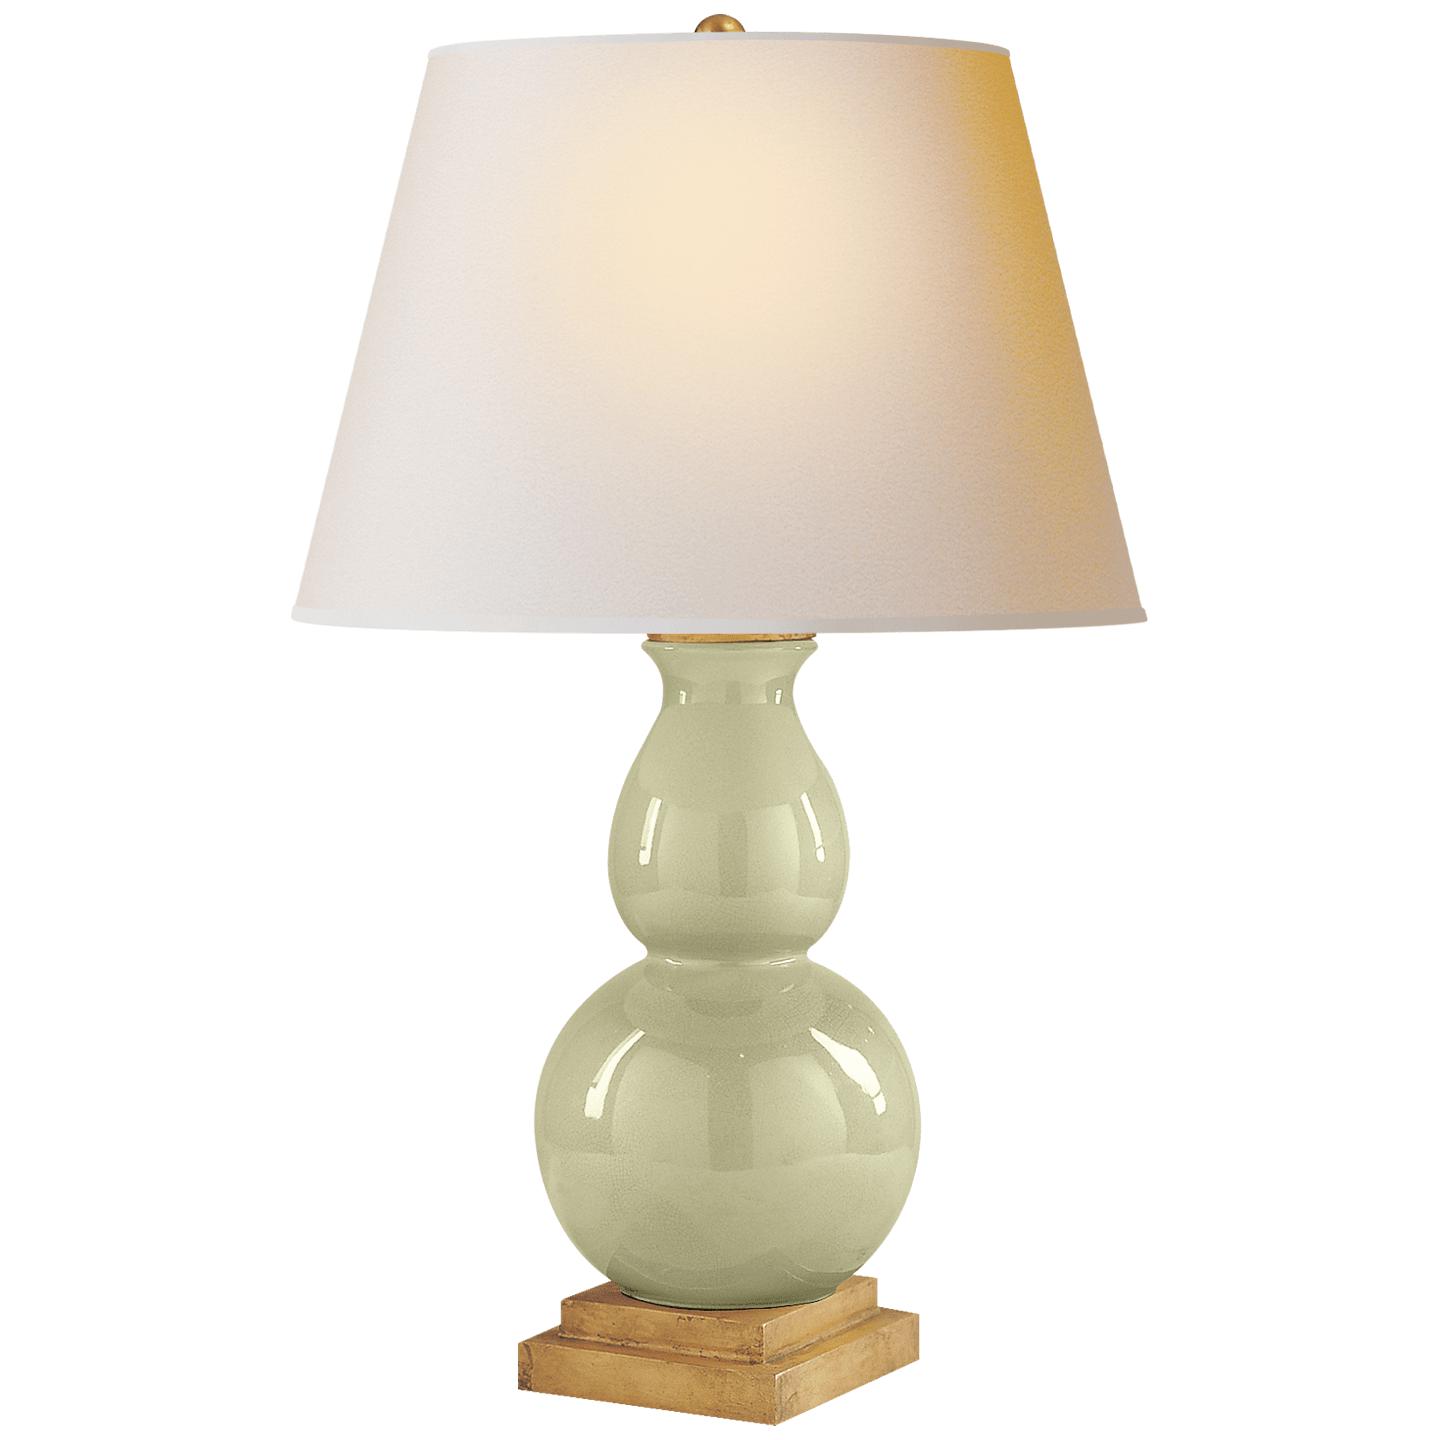 Купить Настольная лампа Gourd Form Small Table Lamp в интернет-магазине roooms.ru